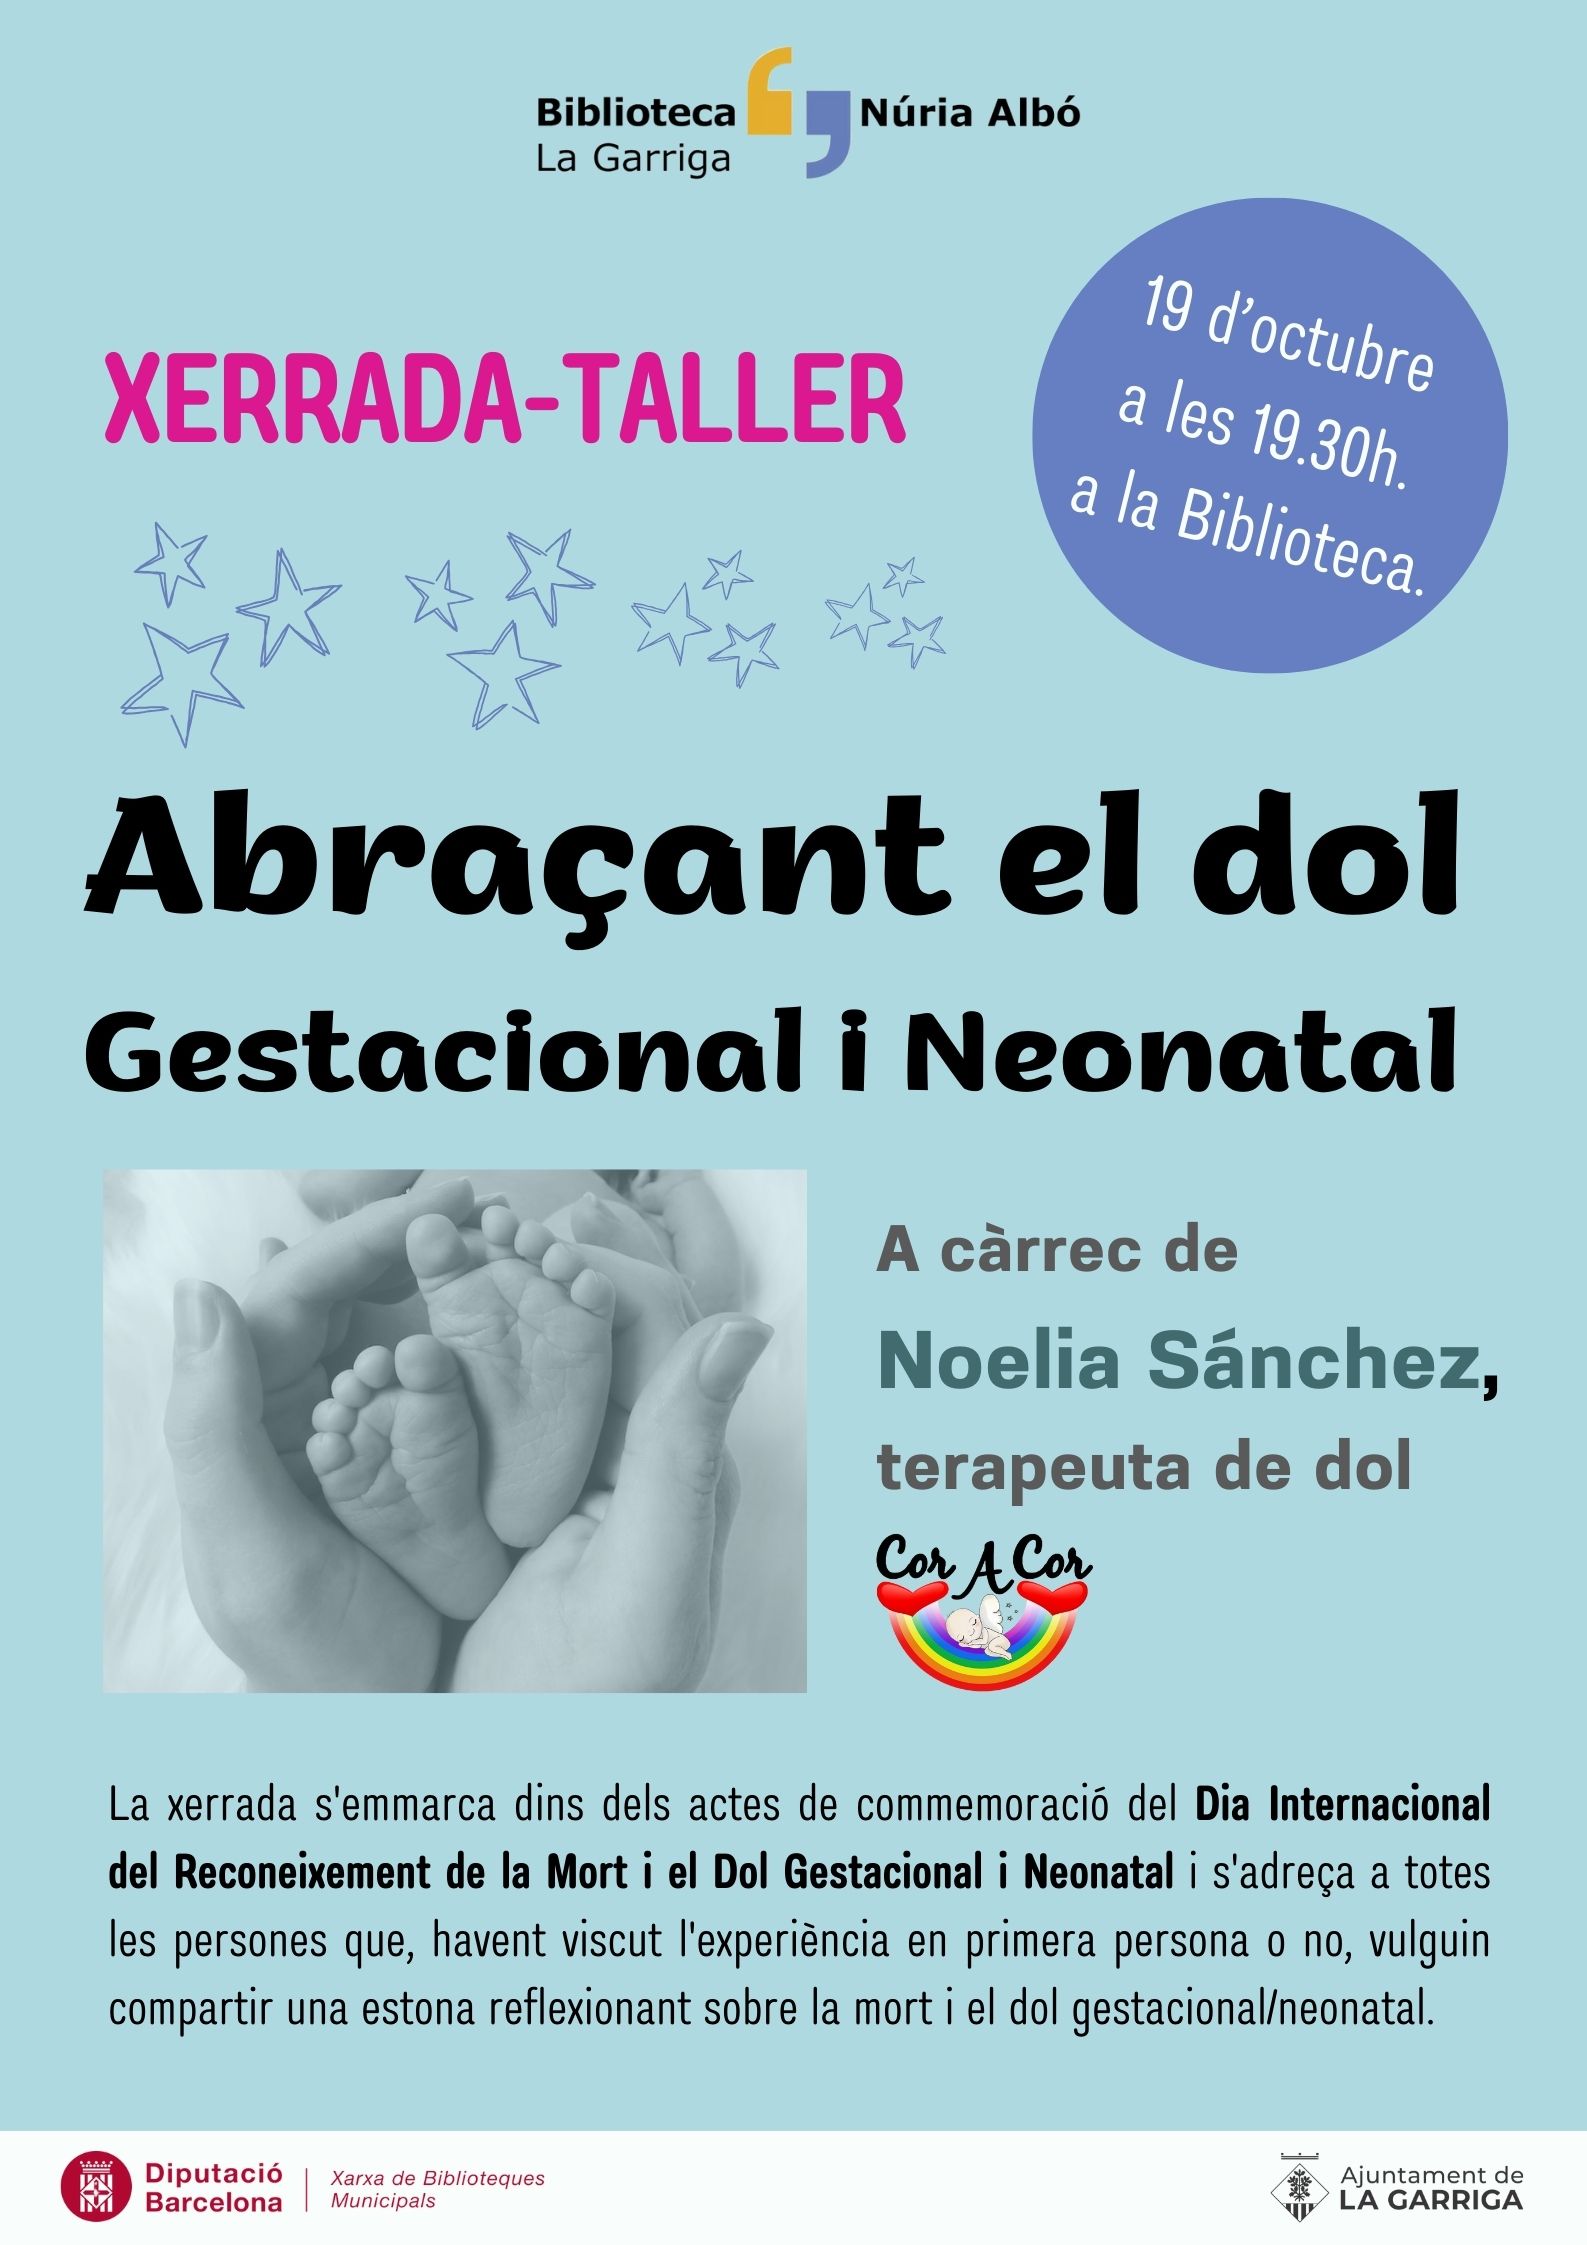 Xerrada-Taller - "Abraçant el dol Gestacional i Neonatal"